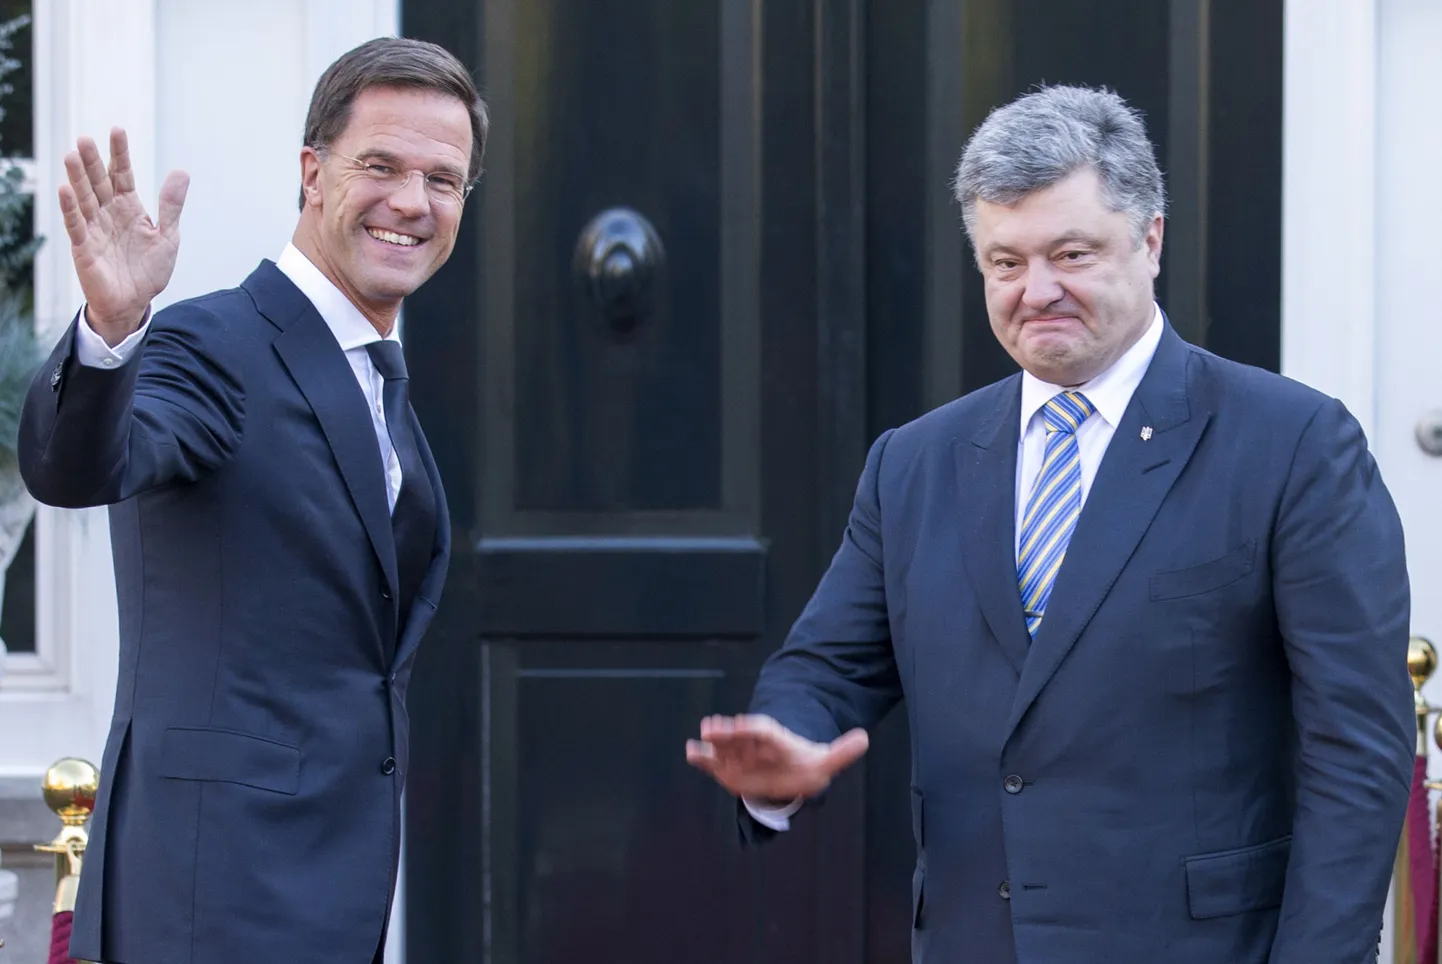 Hollandi peaminister Mark Rutte täna Haagis Ukraina presidendi Petro Porošenkoga kohtumas.